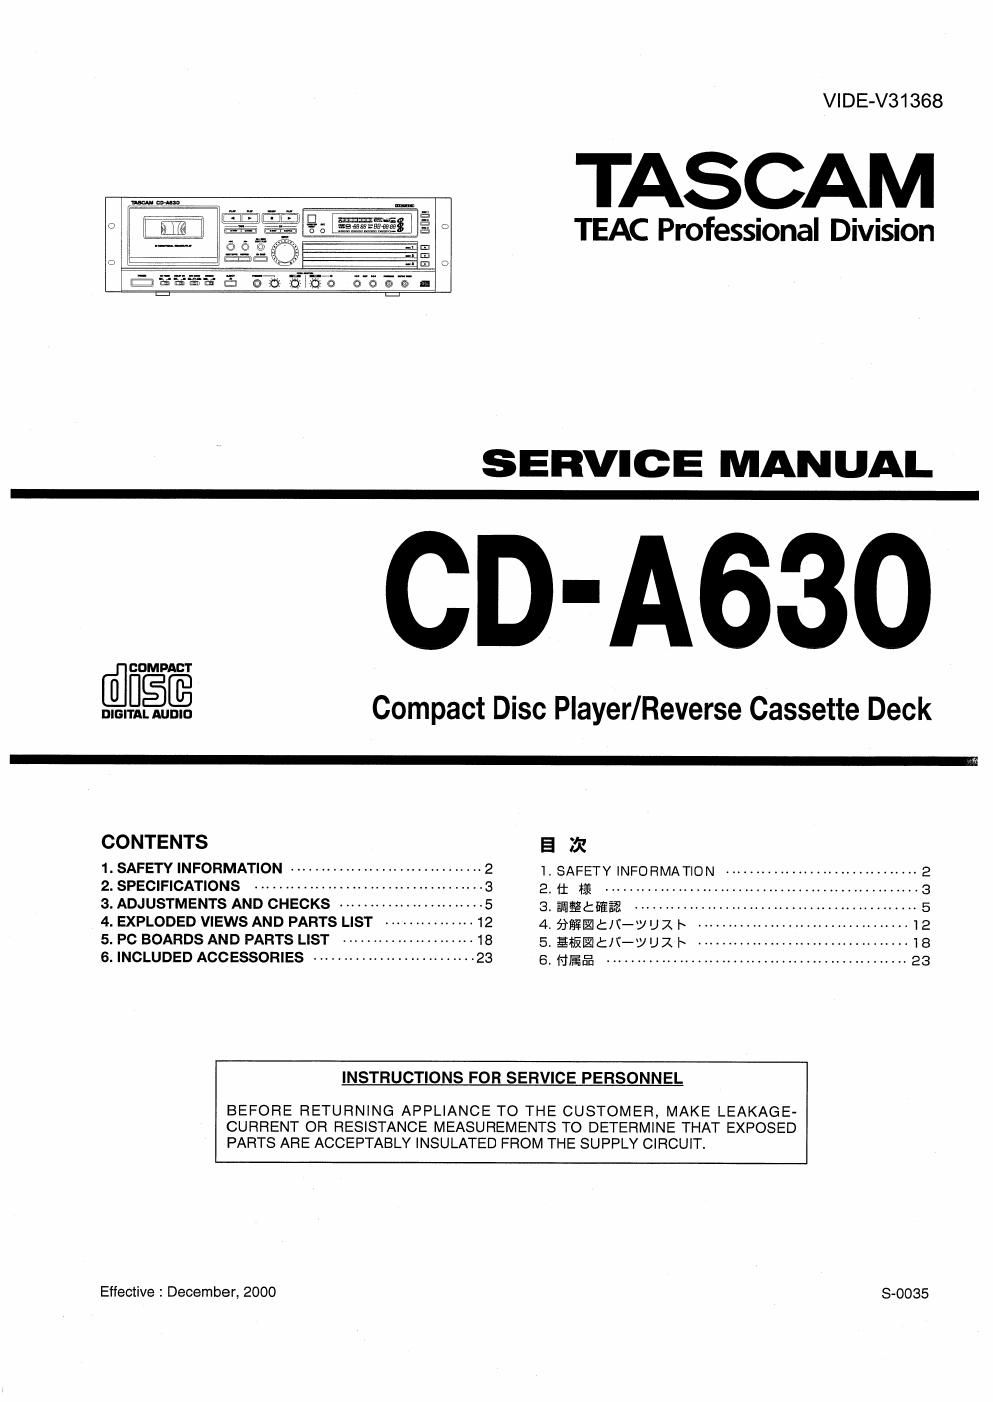 Tascam CDA 630 Service Manual